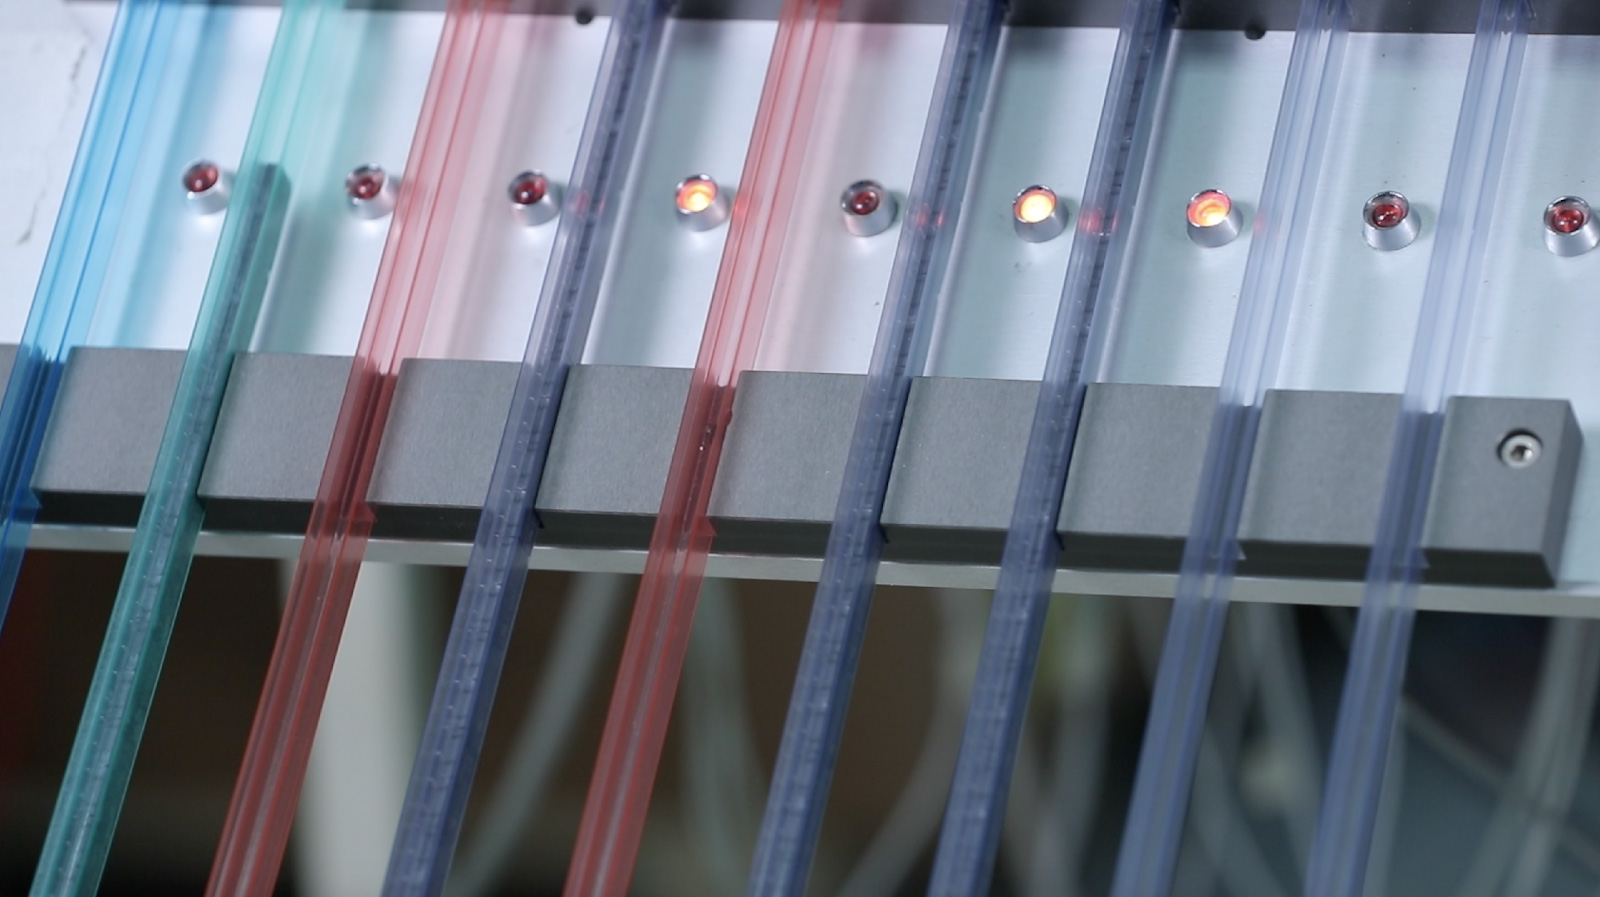 Los relés de estado sólido se prueban y clasifican en tubos de diferentes colores.